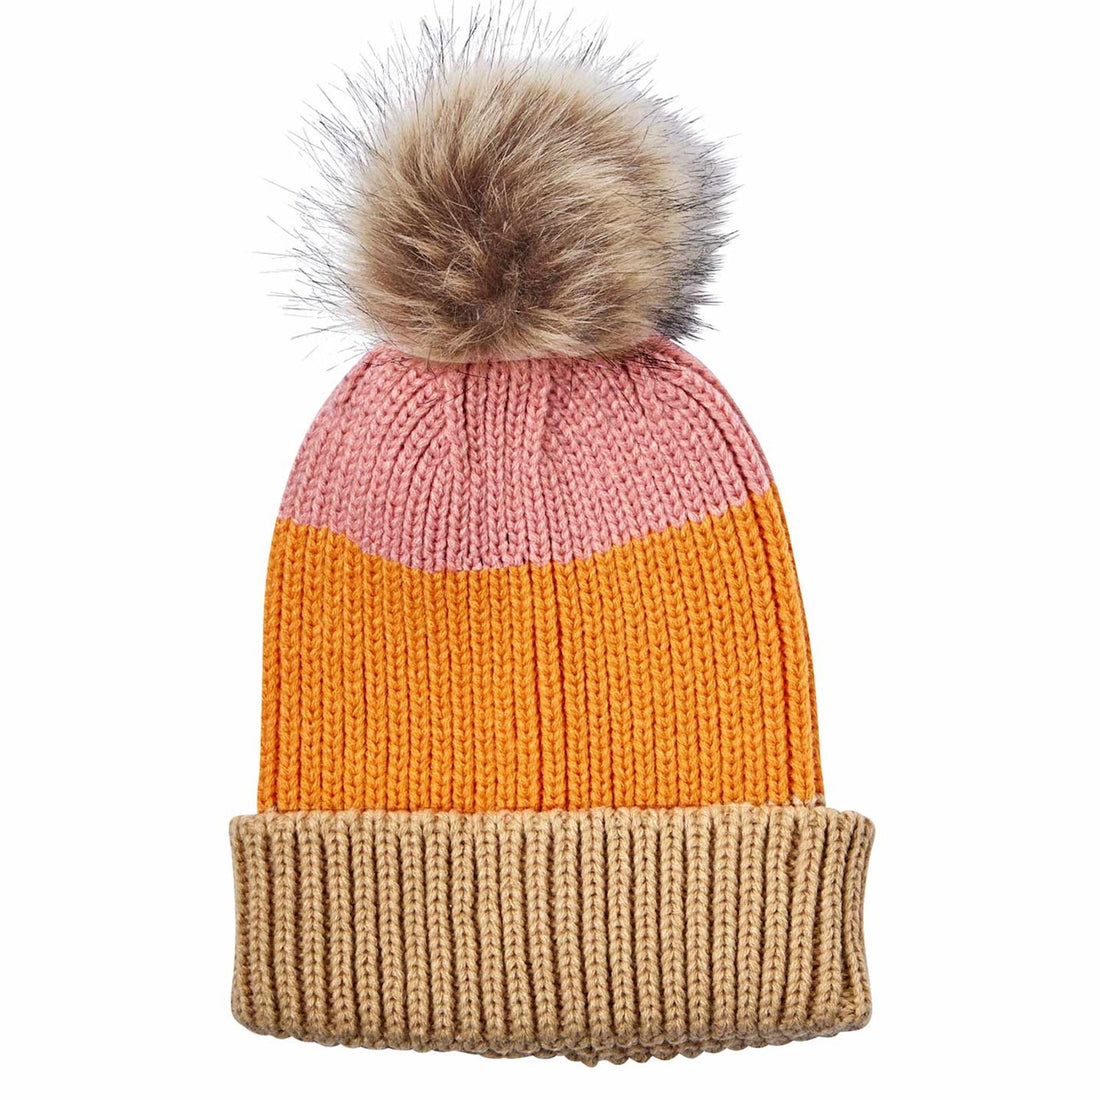 Chelsea Orange Knit Beanie Hat - rockflowerpaper